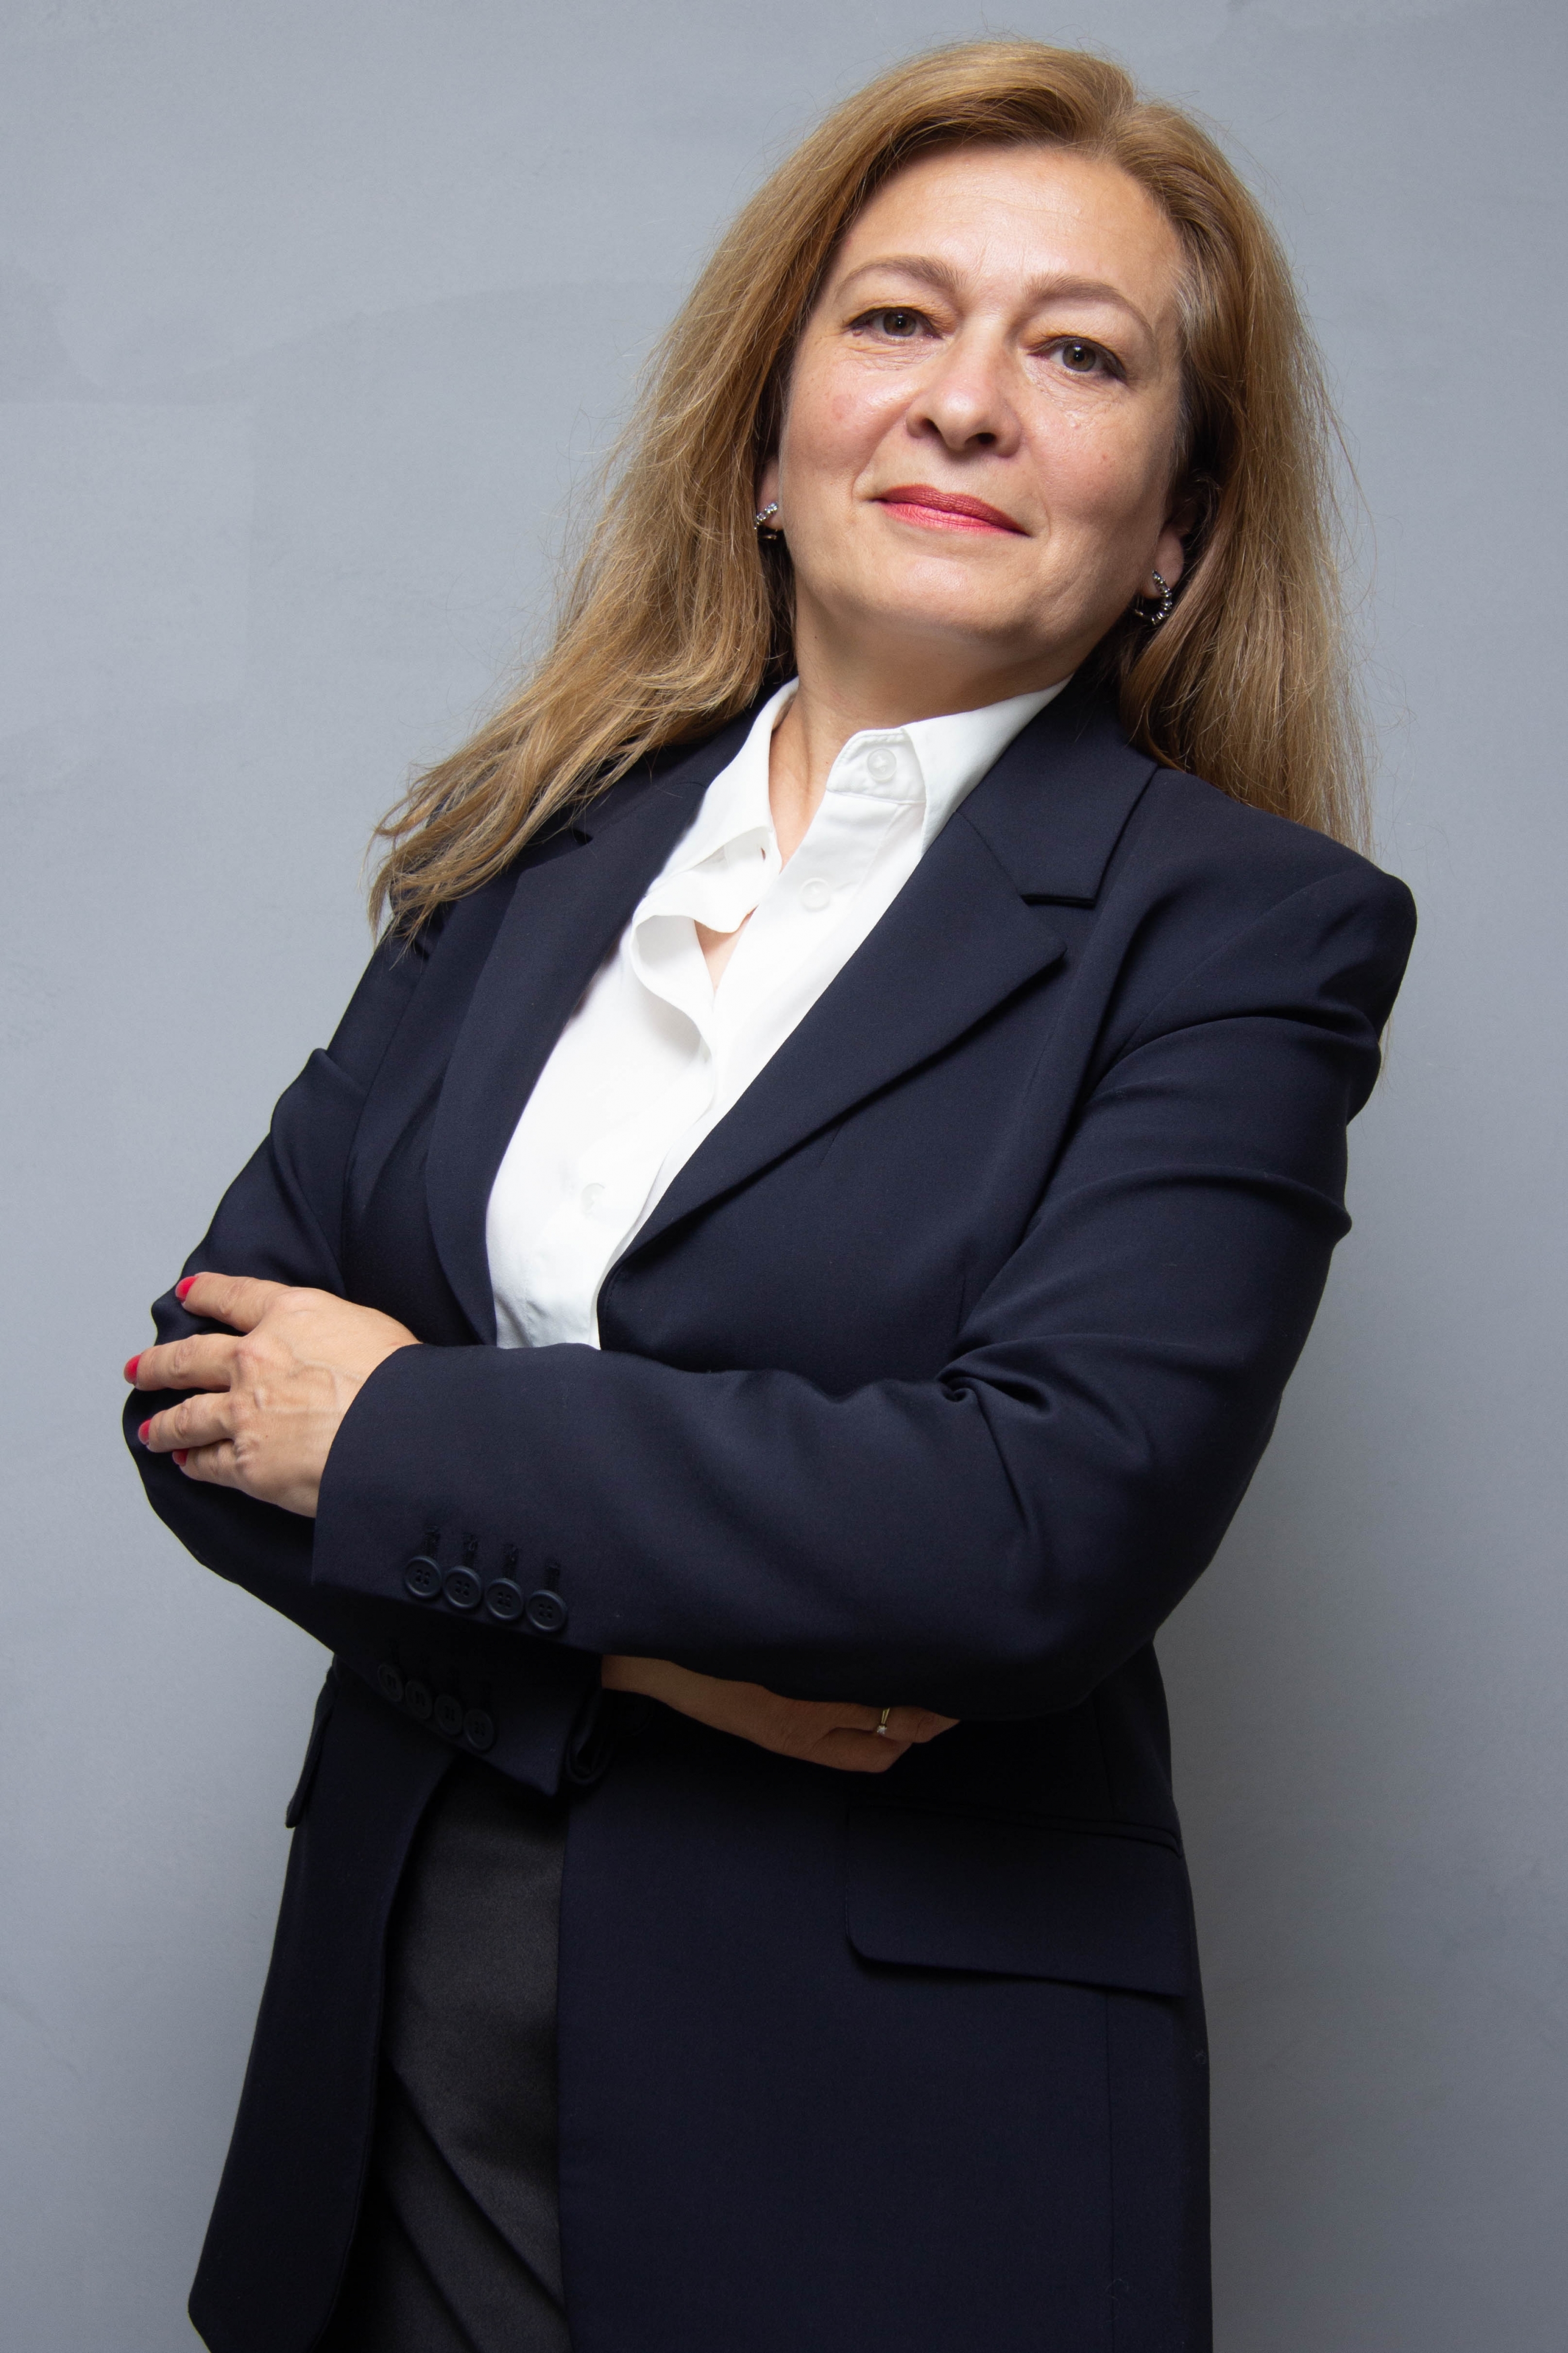 Саблина Ирина Викторовна, Член координационного совета «Движение Первых», член Регионального совета «Движение Первых»